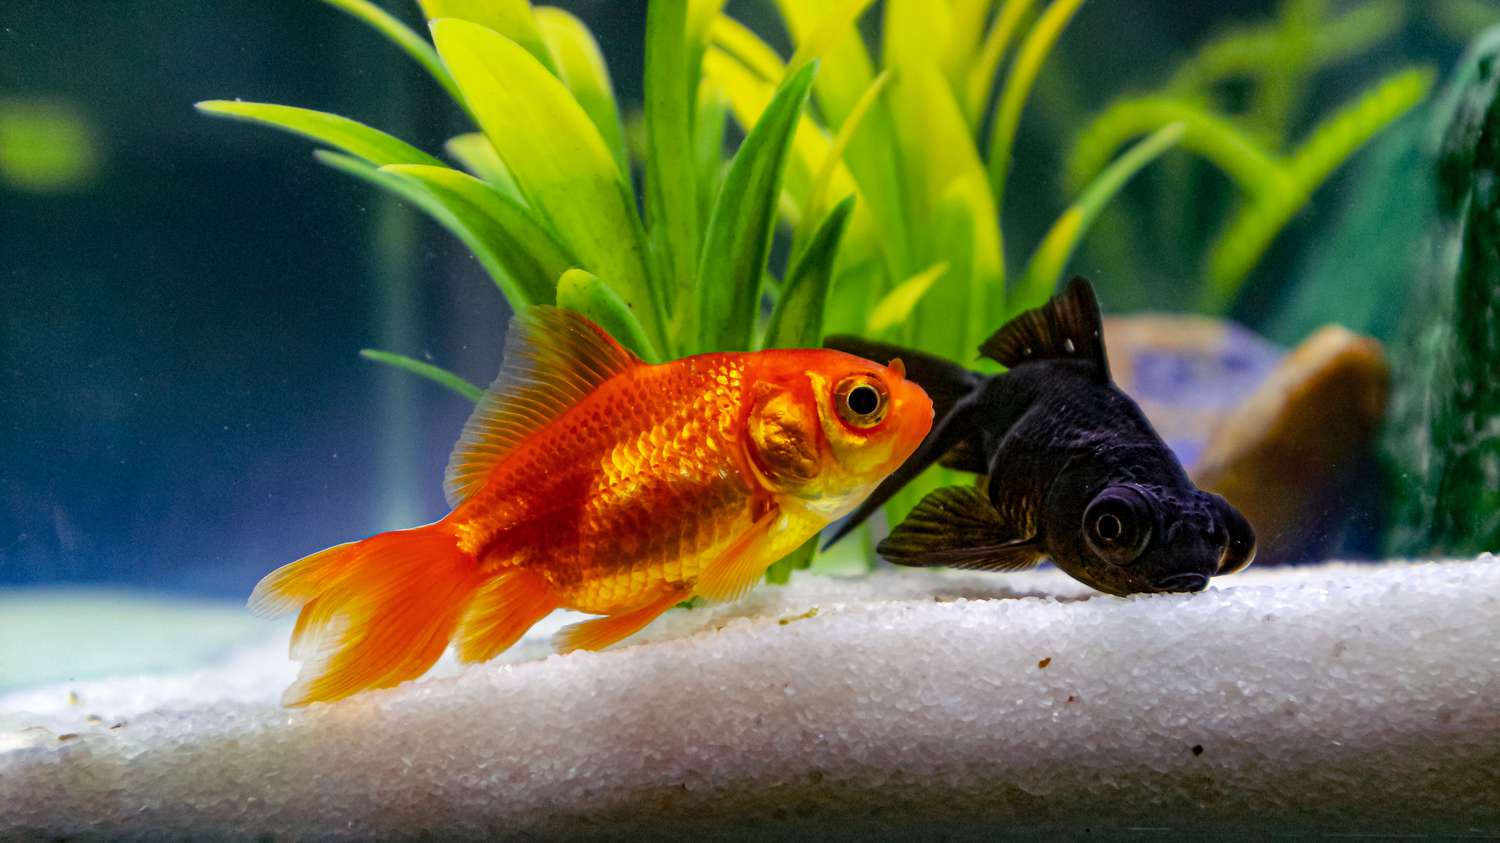 peixe dourado vermelho e preto em um aquário com planta verde